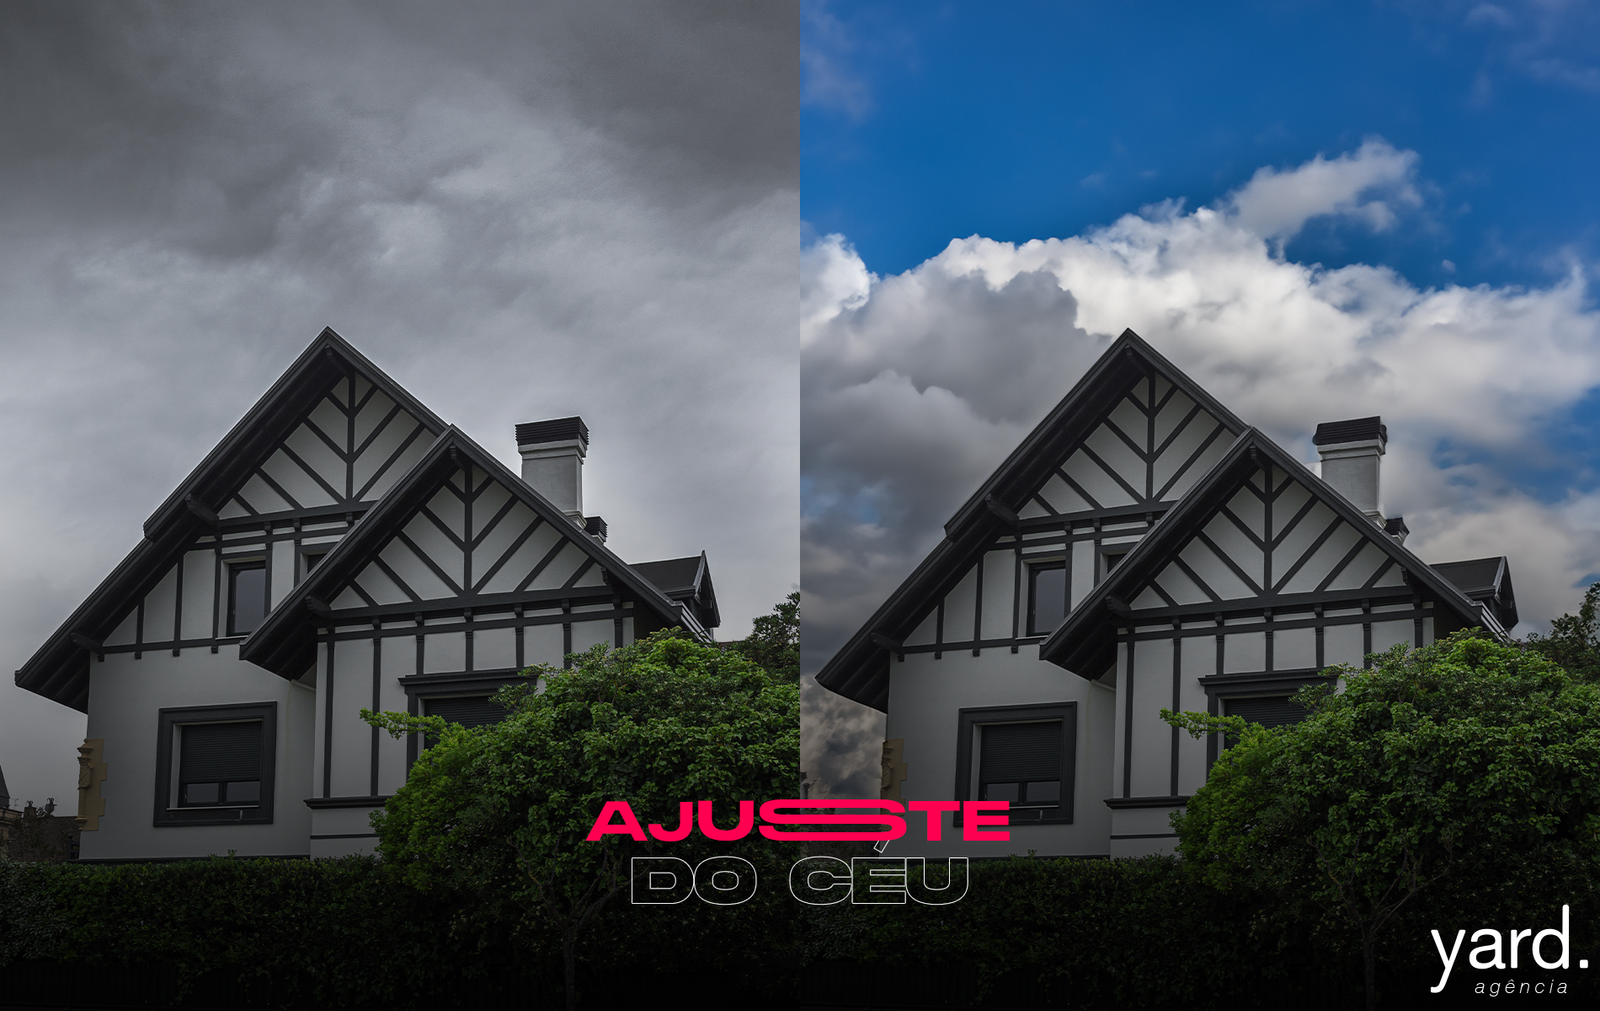 Imagem representando o antes e o depois do uso da inteligência artificial do Photoshop em que o antes é a fachada de uma casa com árvores e plantas e céu nublado e na imagem posterior o céu está azul com algumas nuvens, embaixo está escrito "ajuste do céu"